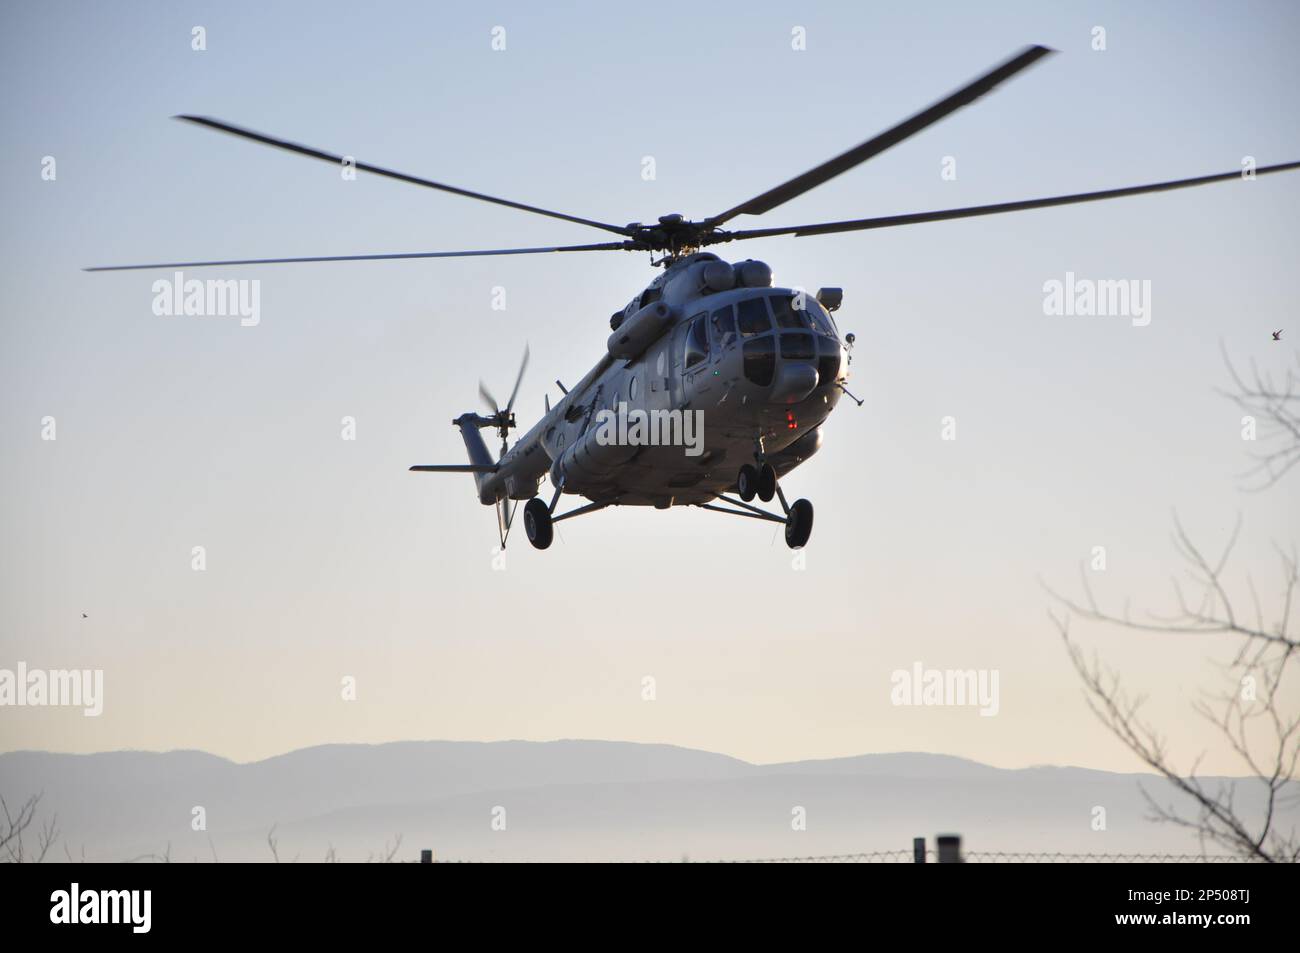 Manœuvres militaires en hélicoptère dans le ciel bleu. Air force Mil mi-171Sh dans le ciel croate. Vol militaire en hélicoptère. Transport de personnes blessées Banque D'Images